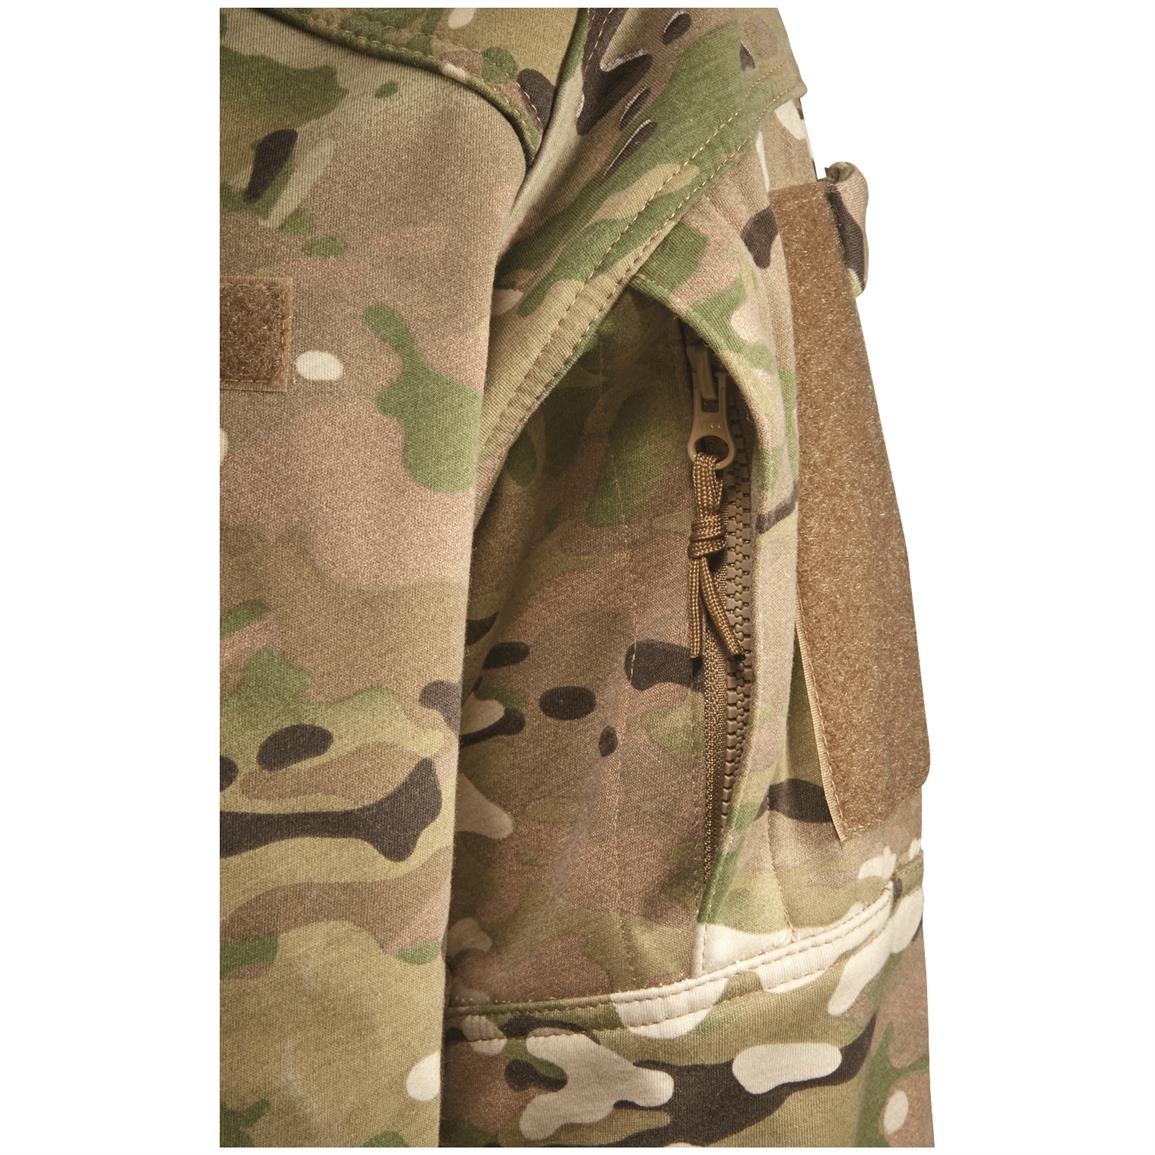 U.S. Military Surplus LWOL OCP Camo Jacket, New - 667333, Insulated ...